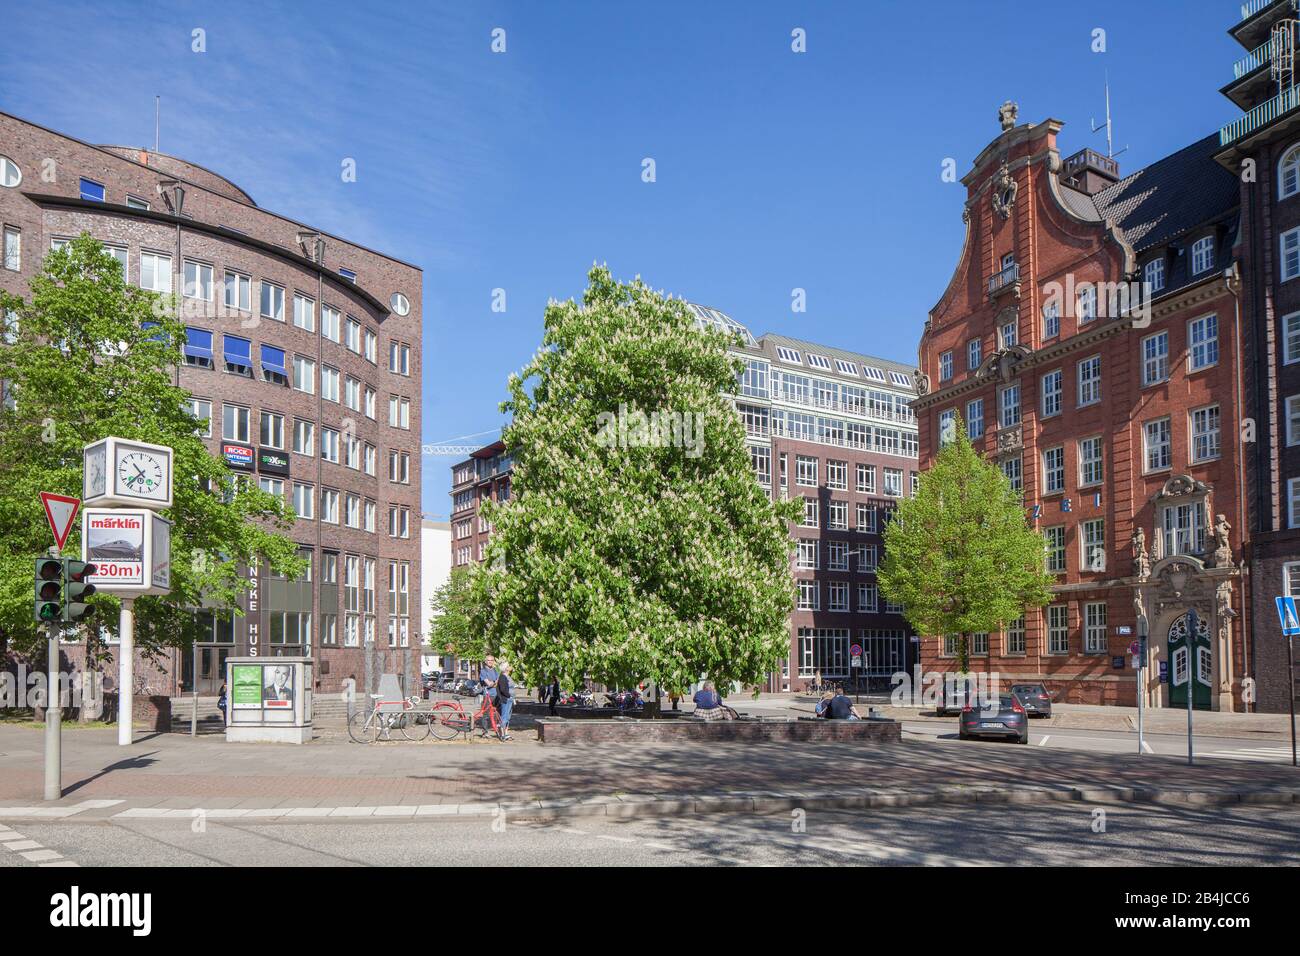 Messberg, former police station, Hamburg, Germany Stock Photo